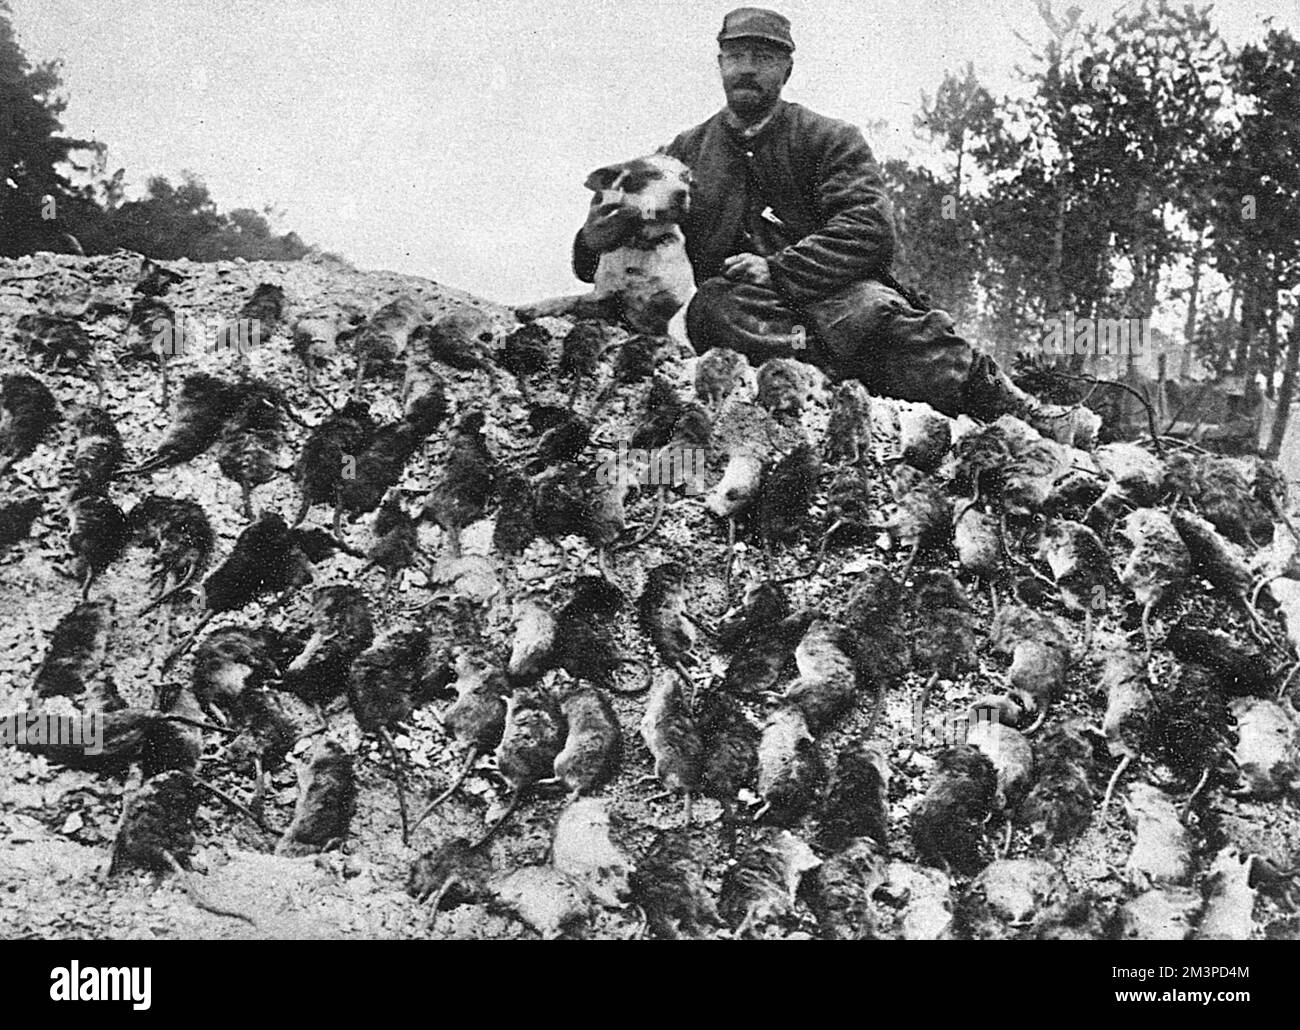 Ratten als Zweig der Militärwissenschaft: Ein offizieller französischer Rattenfänger mit Terrier und "Sack". Datum: 1916 Stockfoto